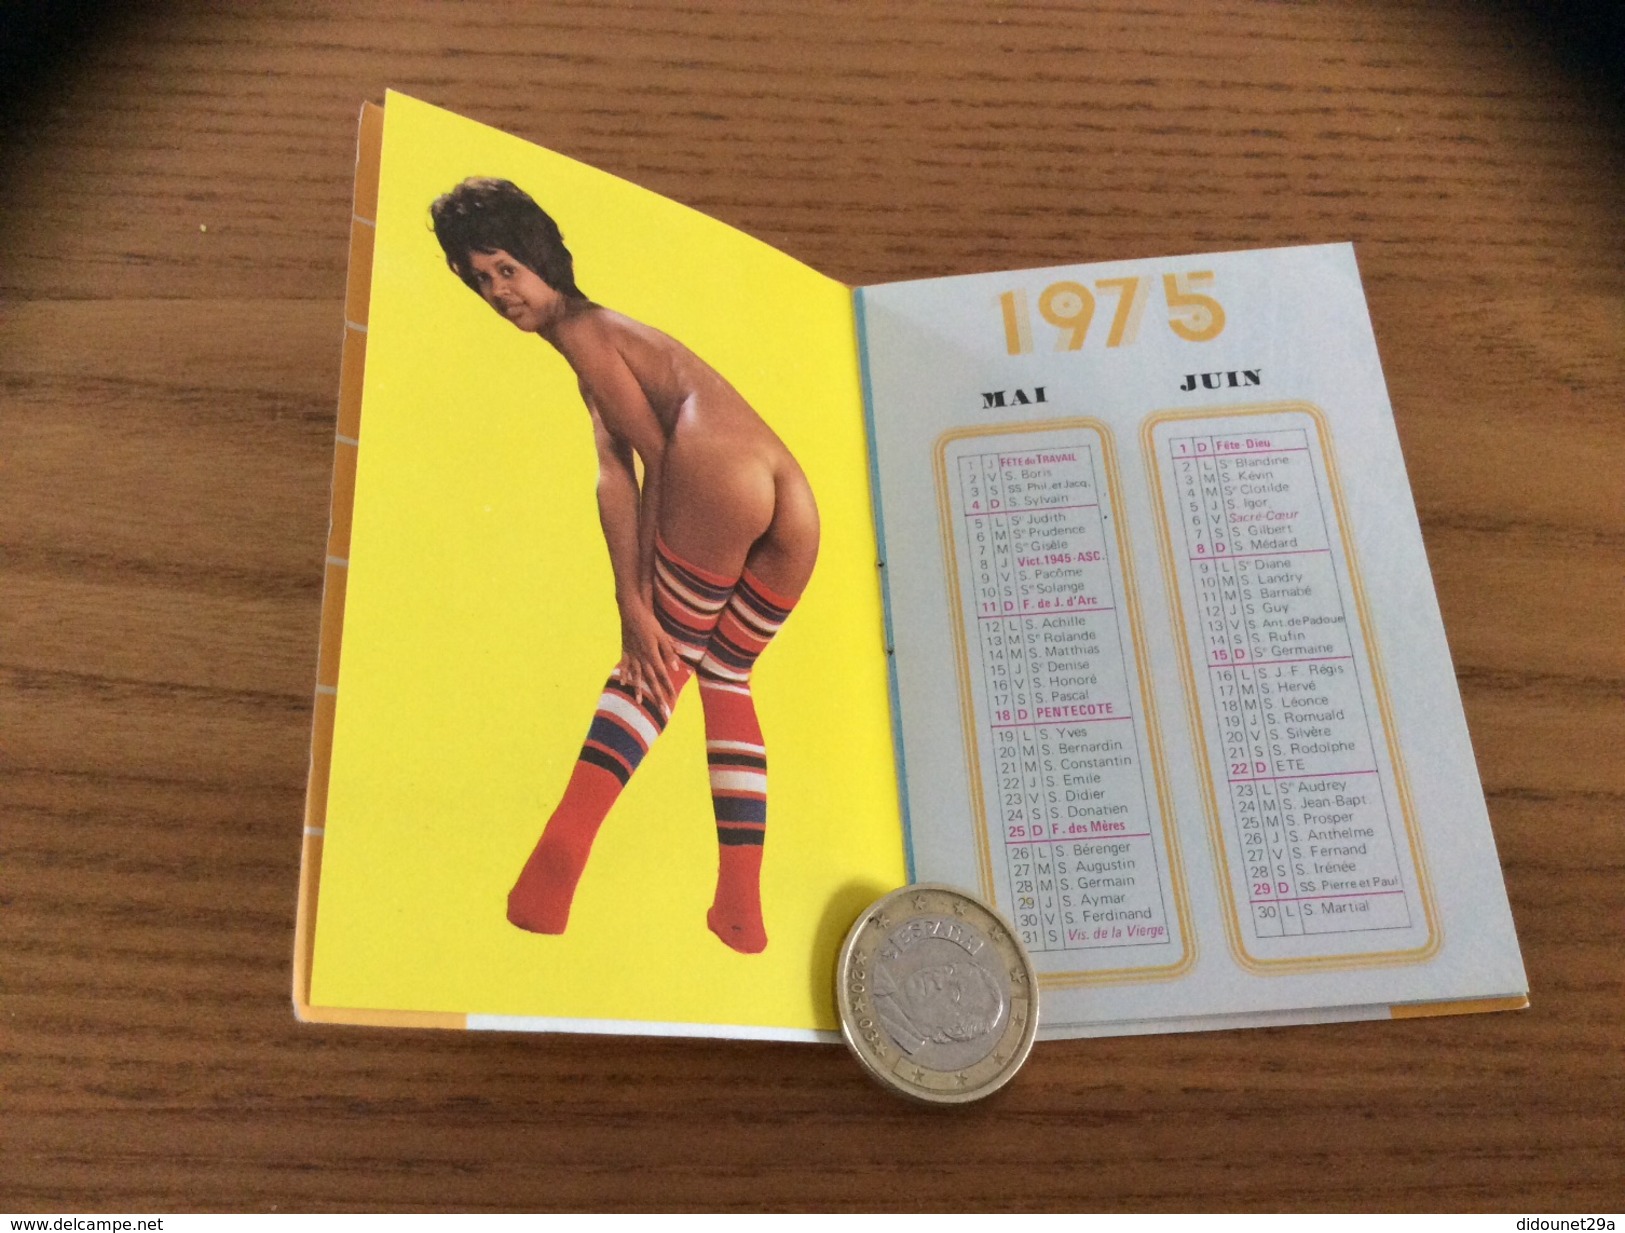 Calendrier 1975 (livret 16 Pages) « PETIT DICTIONNAIRE Sur La Femme - Photos LEN SIRMAN PRESS St-Jean Pin-up, Nue, Sexy - Small : 1971-80